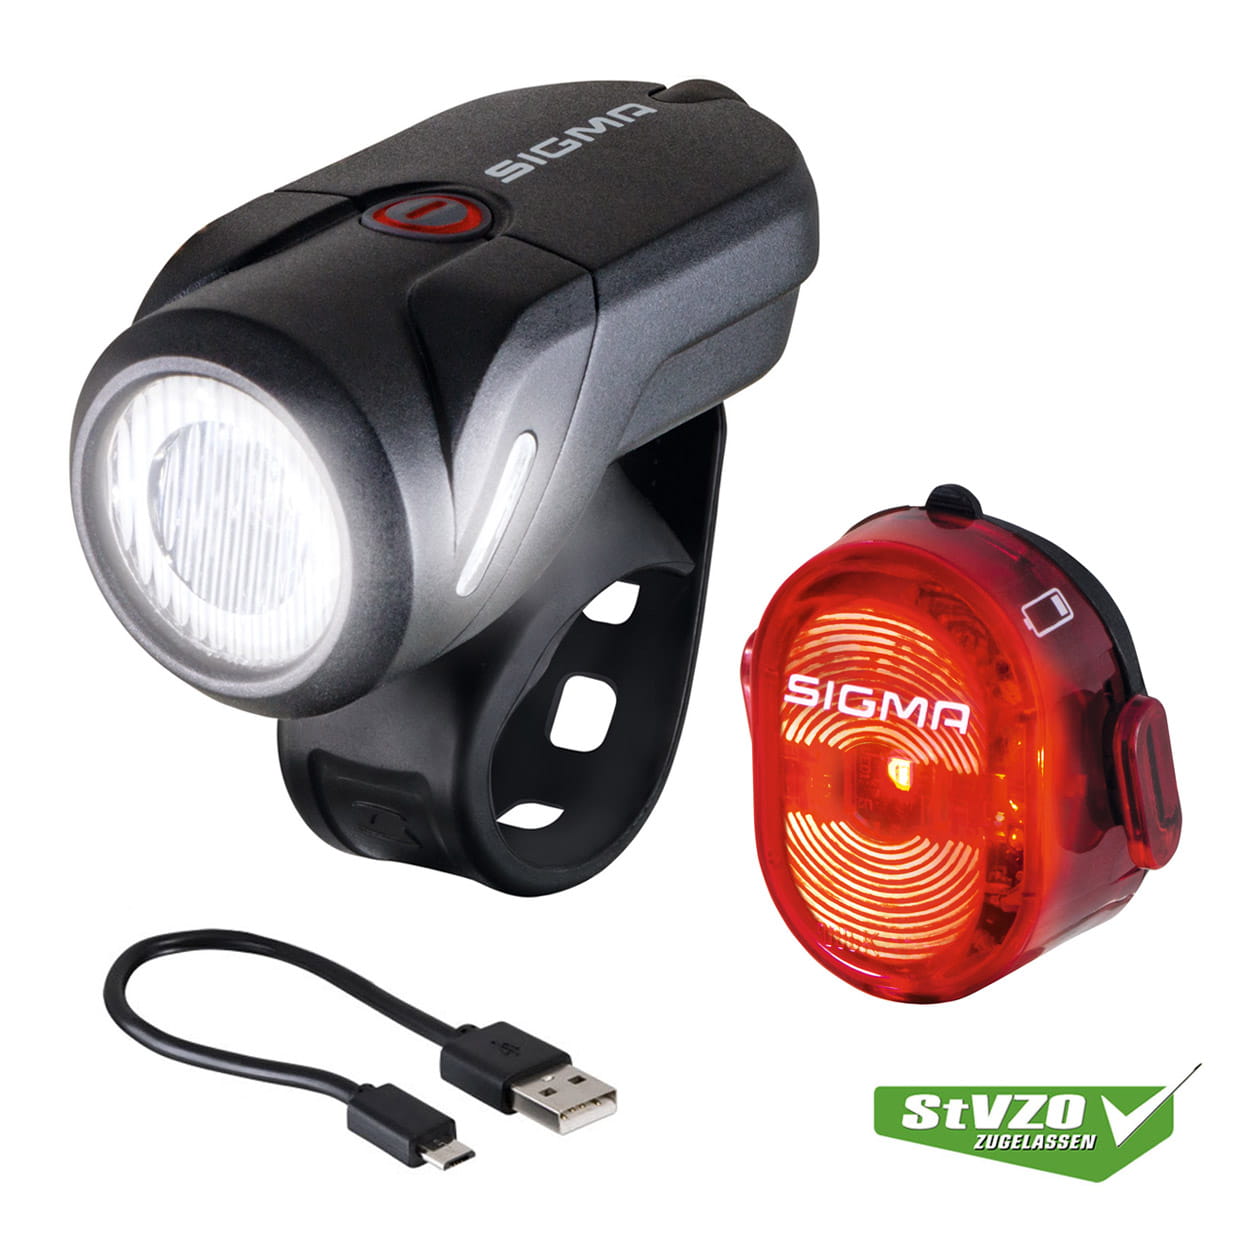 Sigma AURA 35 LED Fahrradlicht und Rücklicht Nugget II mit USB